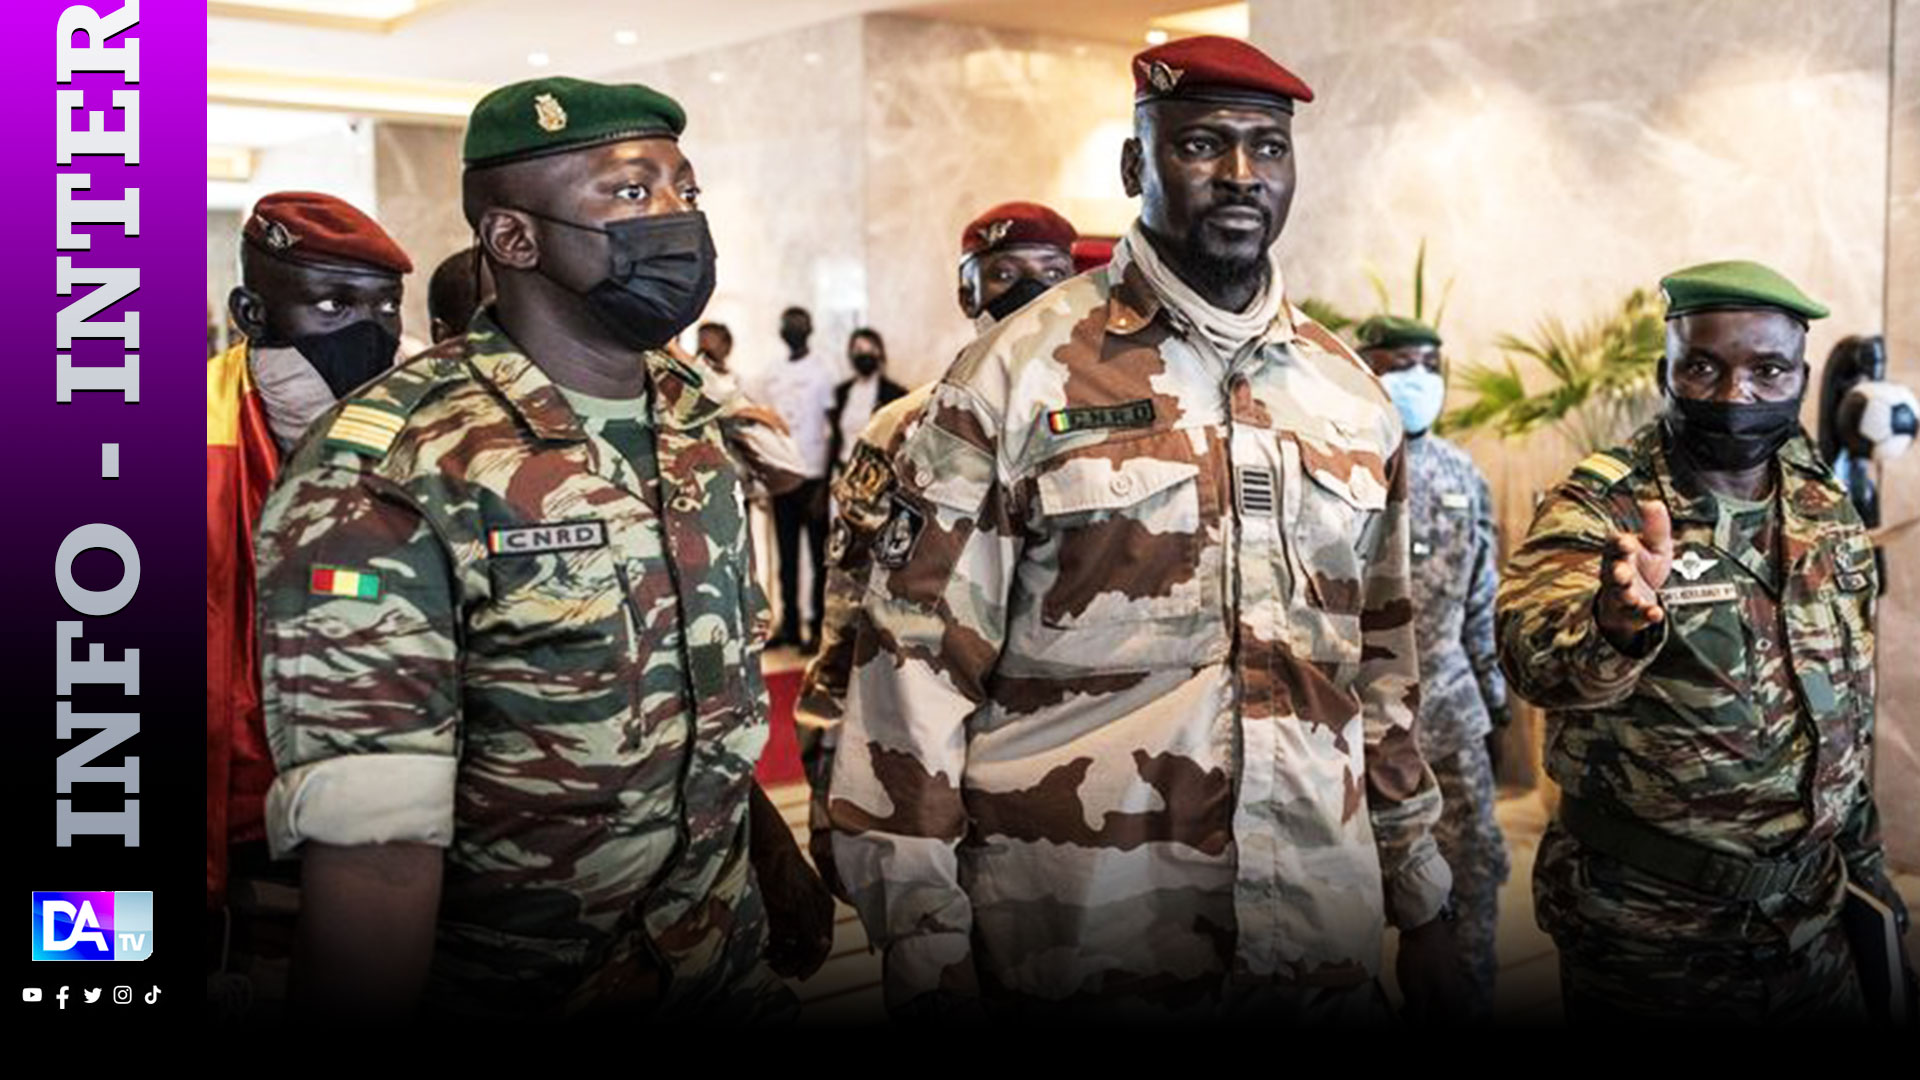 La junte nigérienne demande un soutien à la Guinée lors d'une visite à Conakry